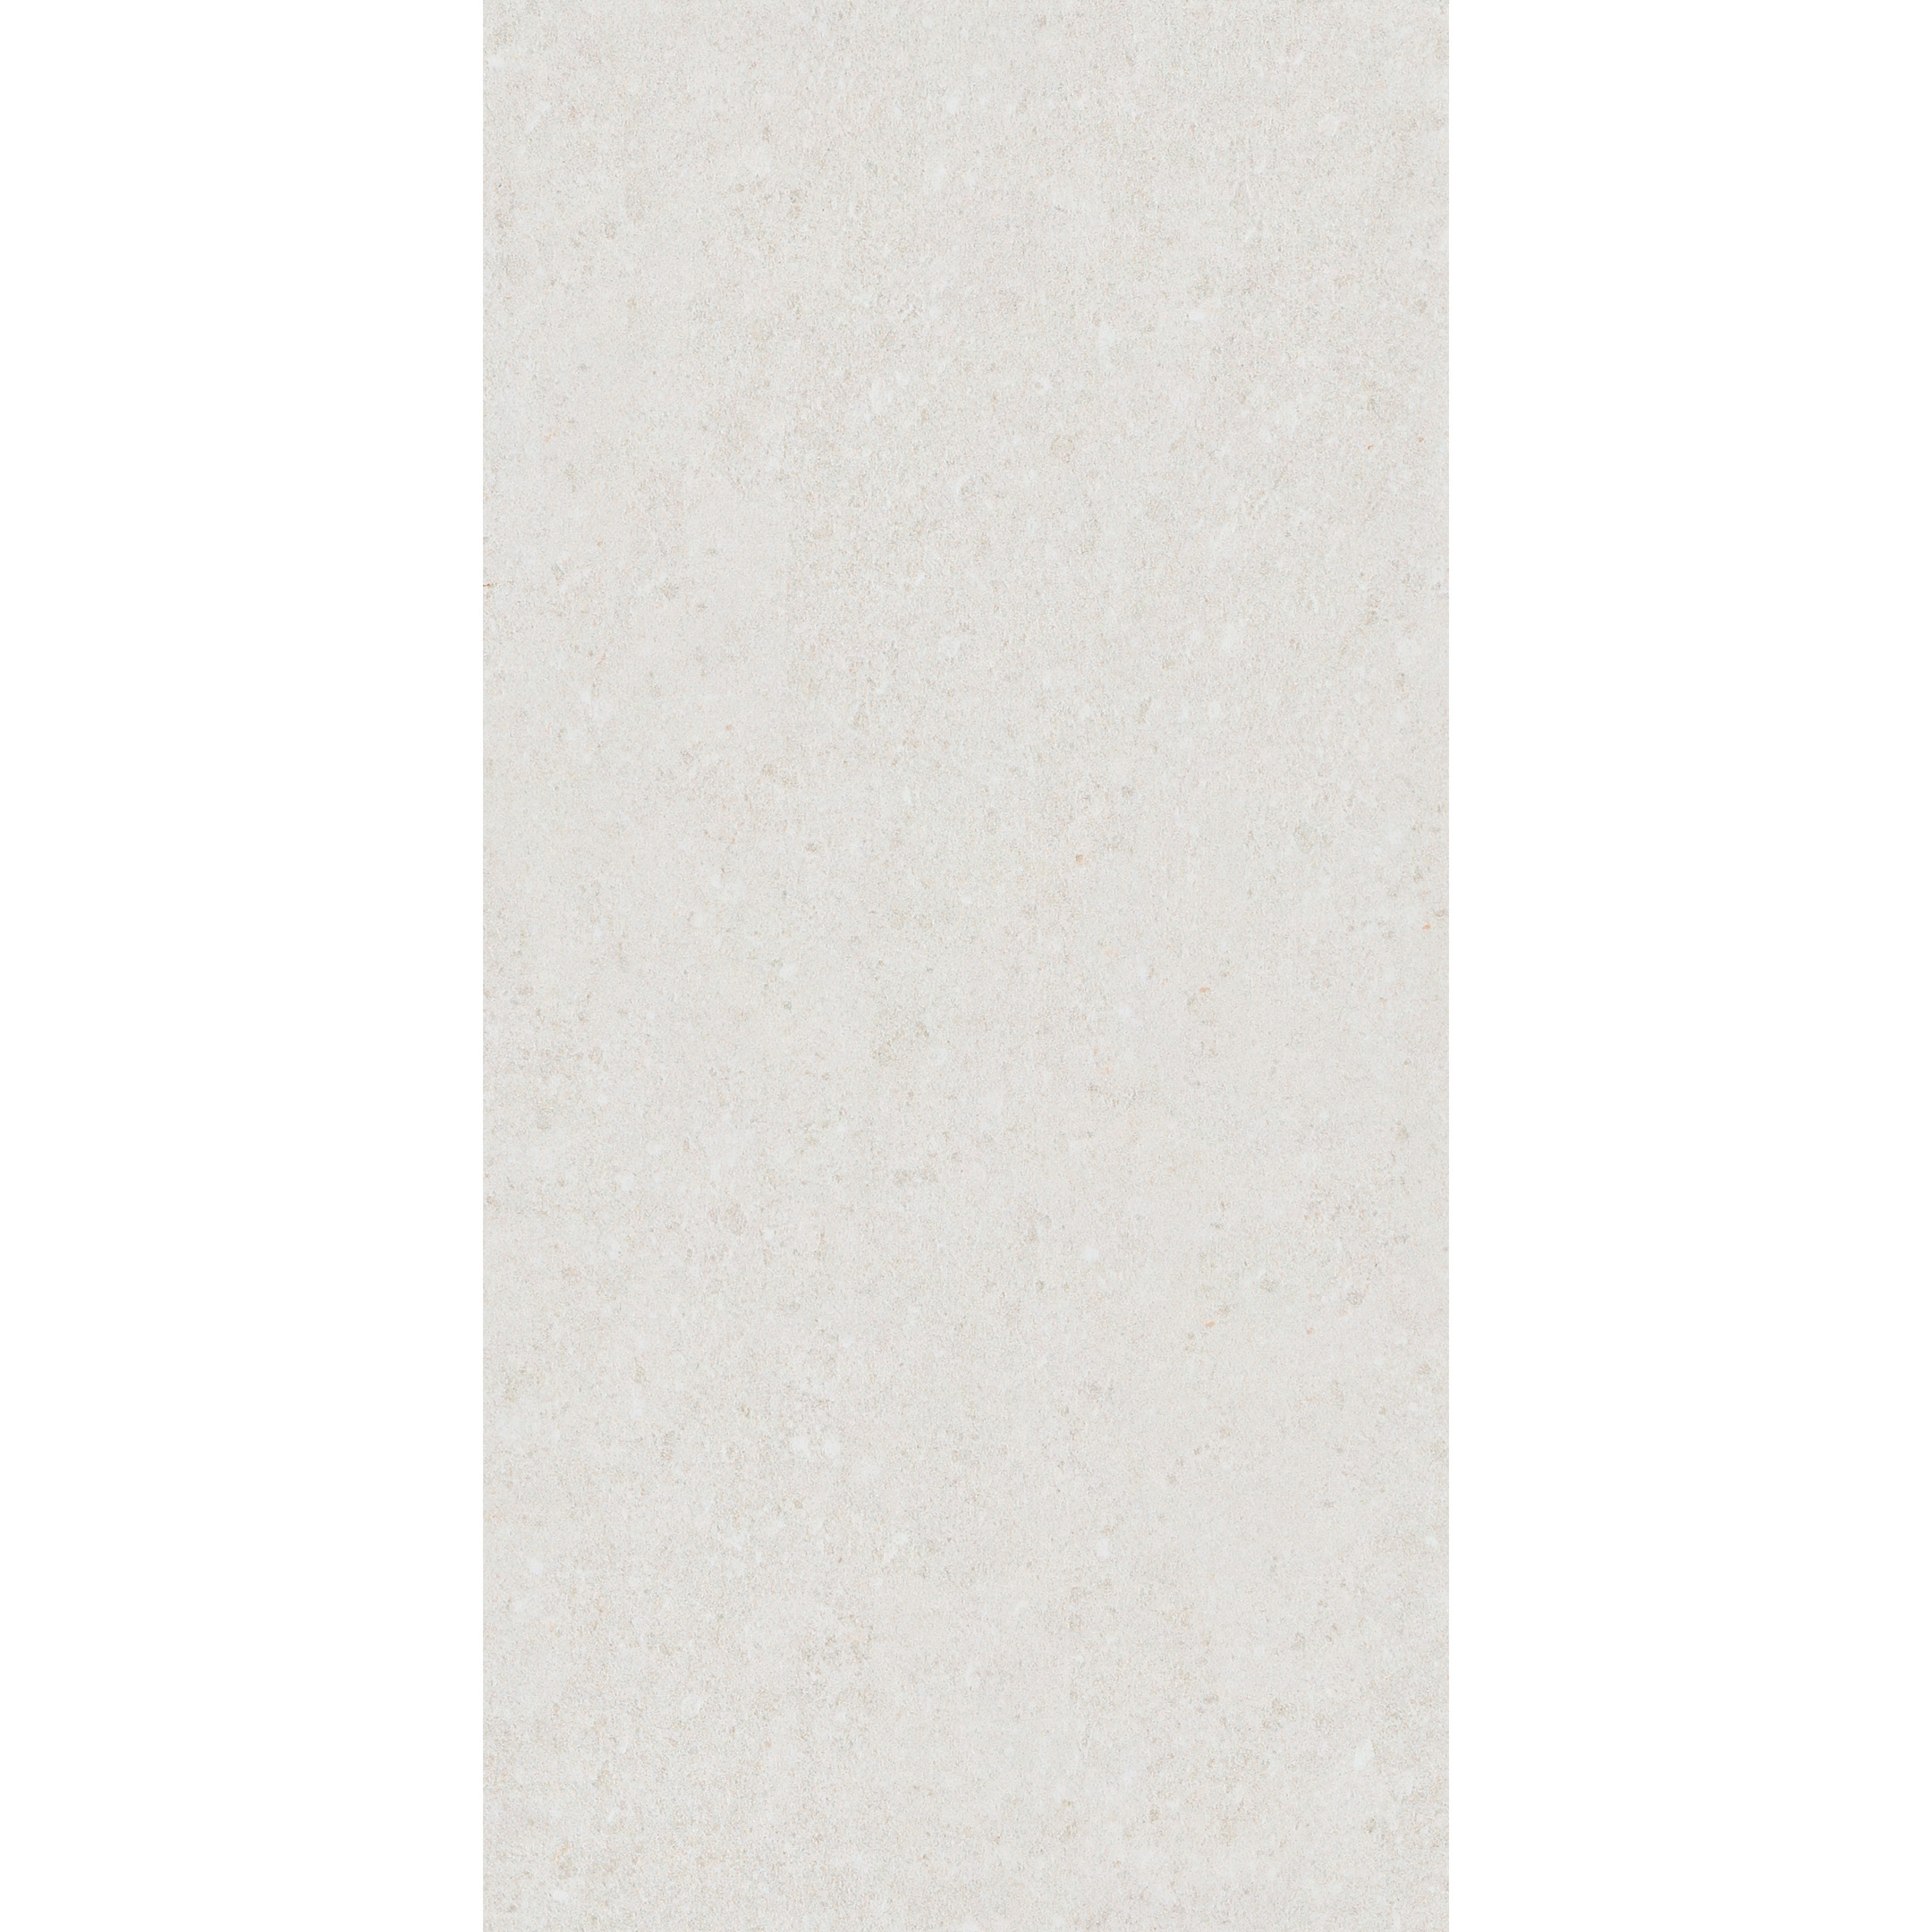 Плитка облицовочная Нефрит Норд светло-серая 400x200x8 мм (15 шт.=1,2 кв.м)